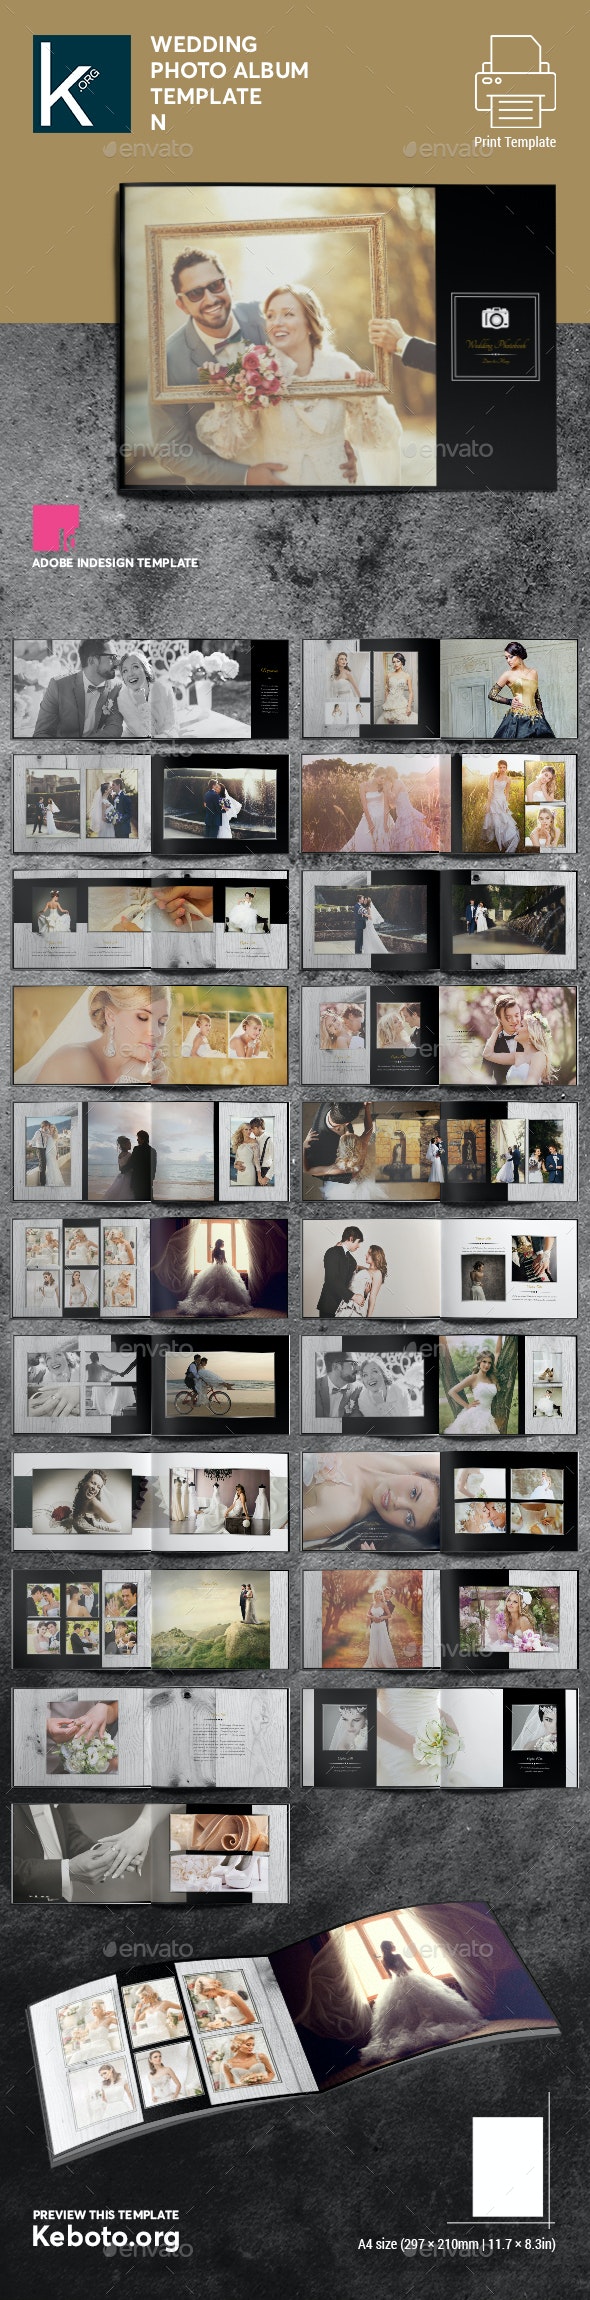 قالب ایندیزاین آلبوم عکس عروسی Wedding Photo Album Template